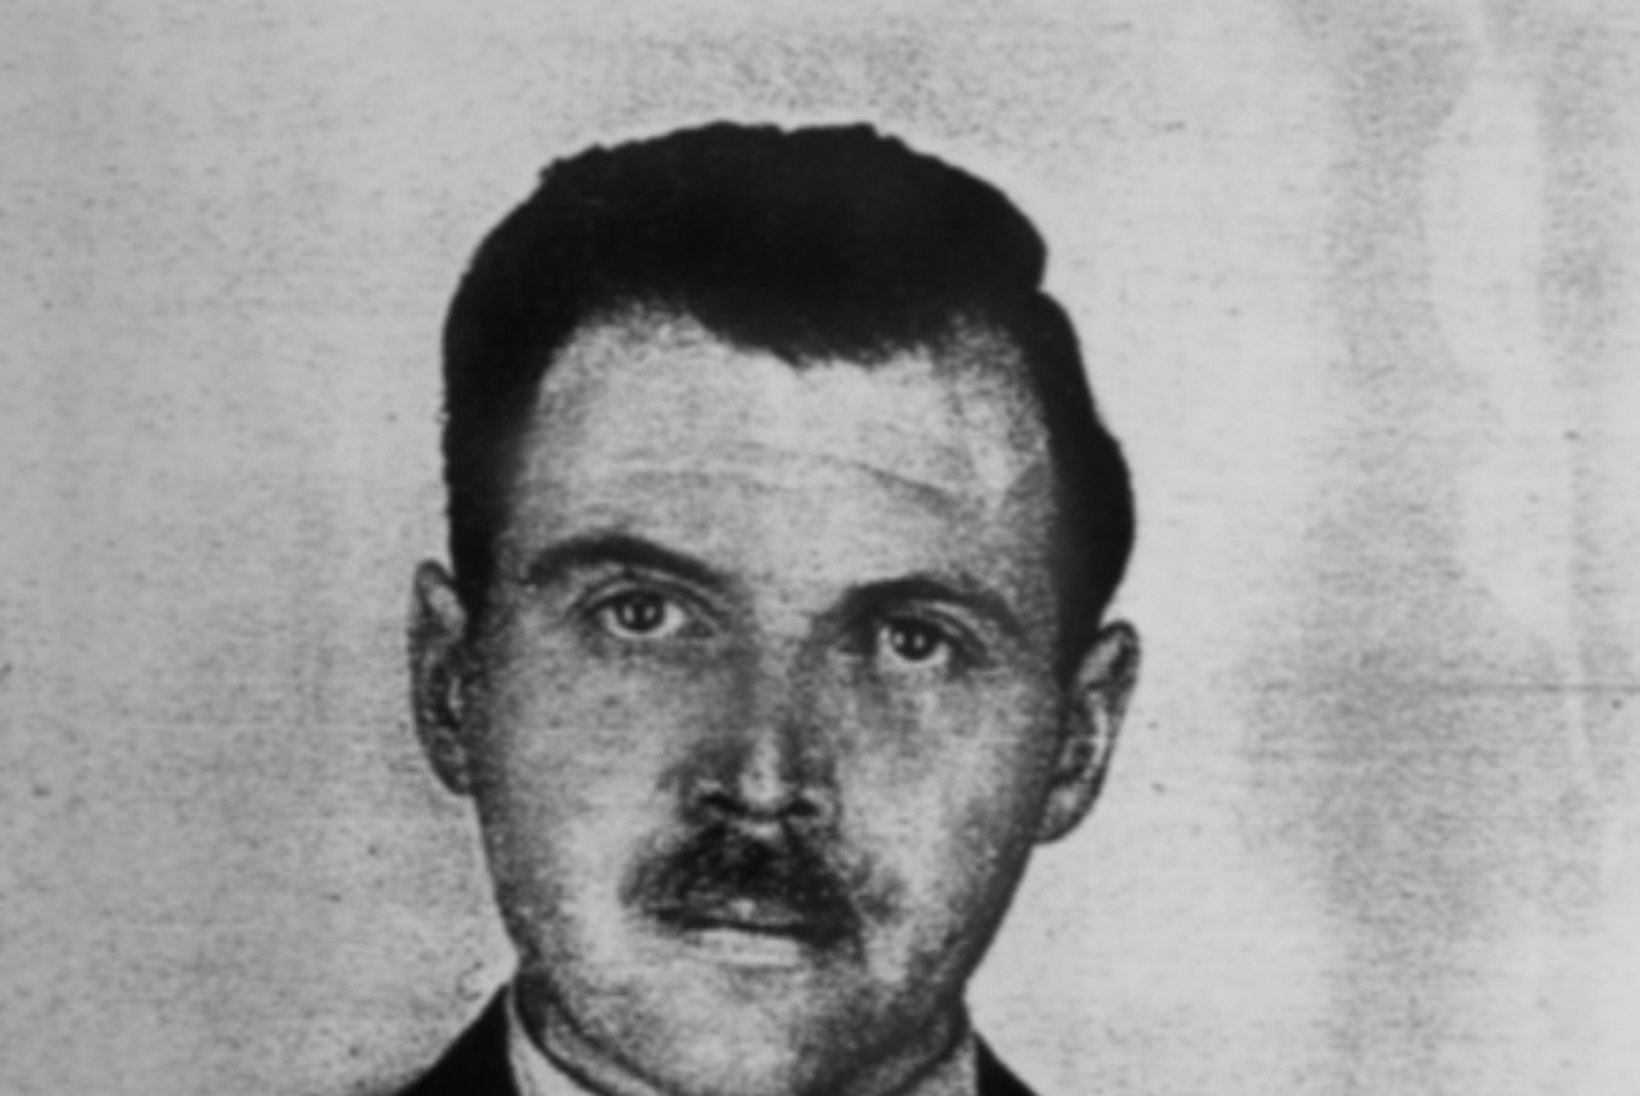 SURMAINGEL: laagriarst Josef Mengele korraldas Auschwitzis võikaid eksperimente 